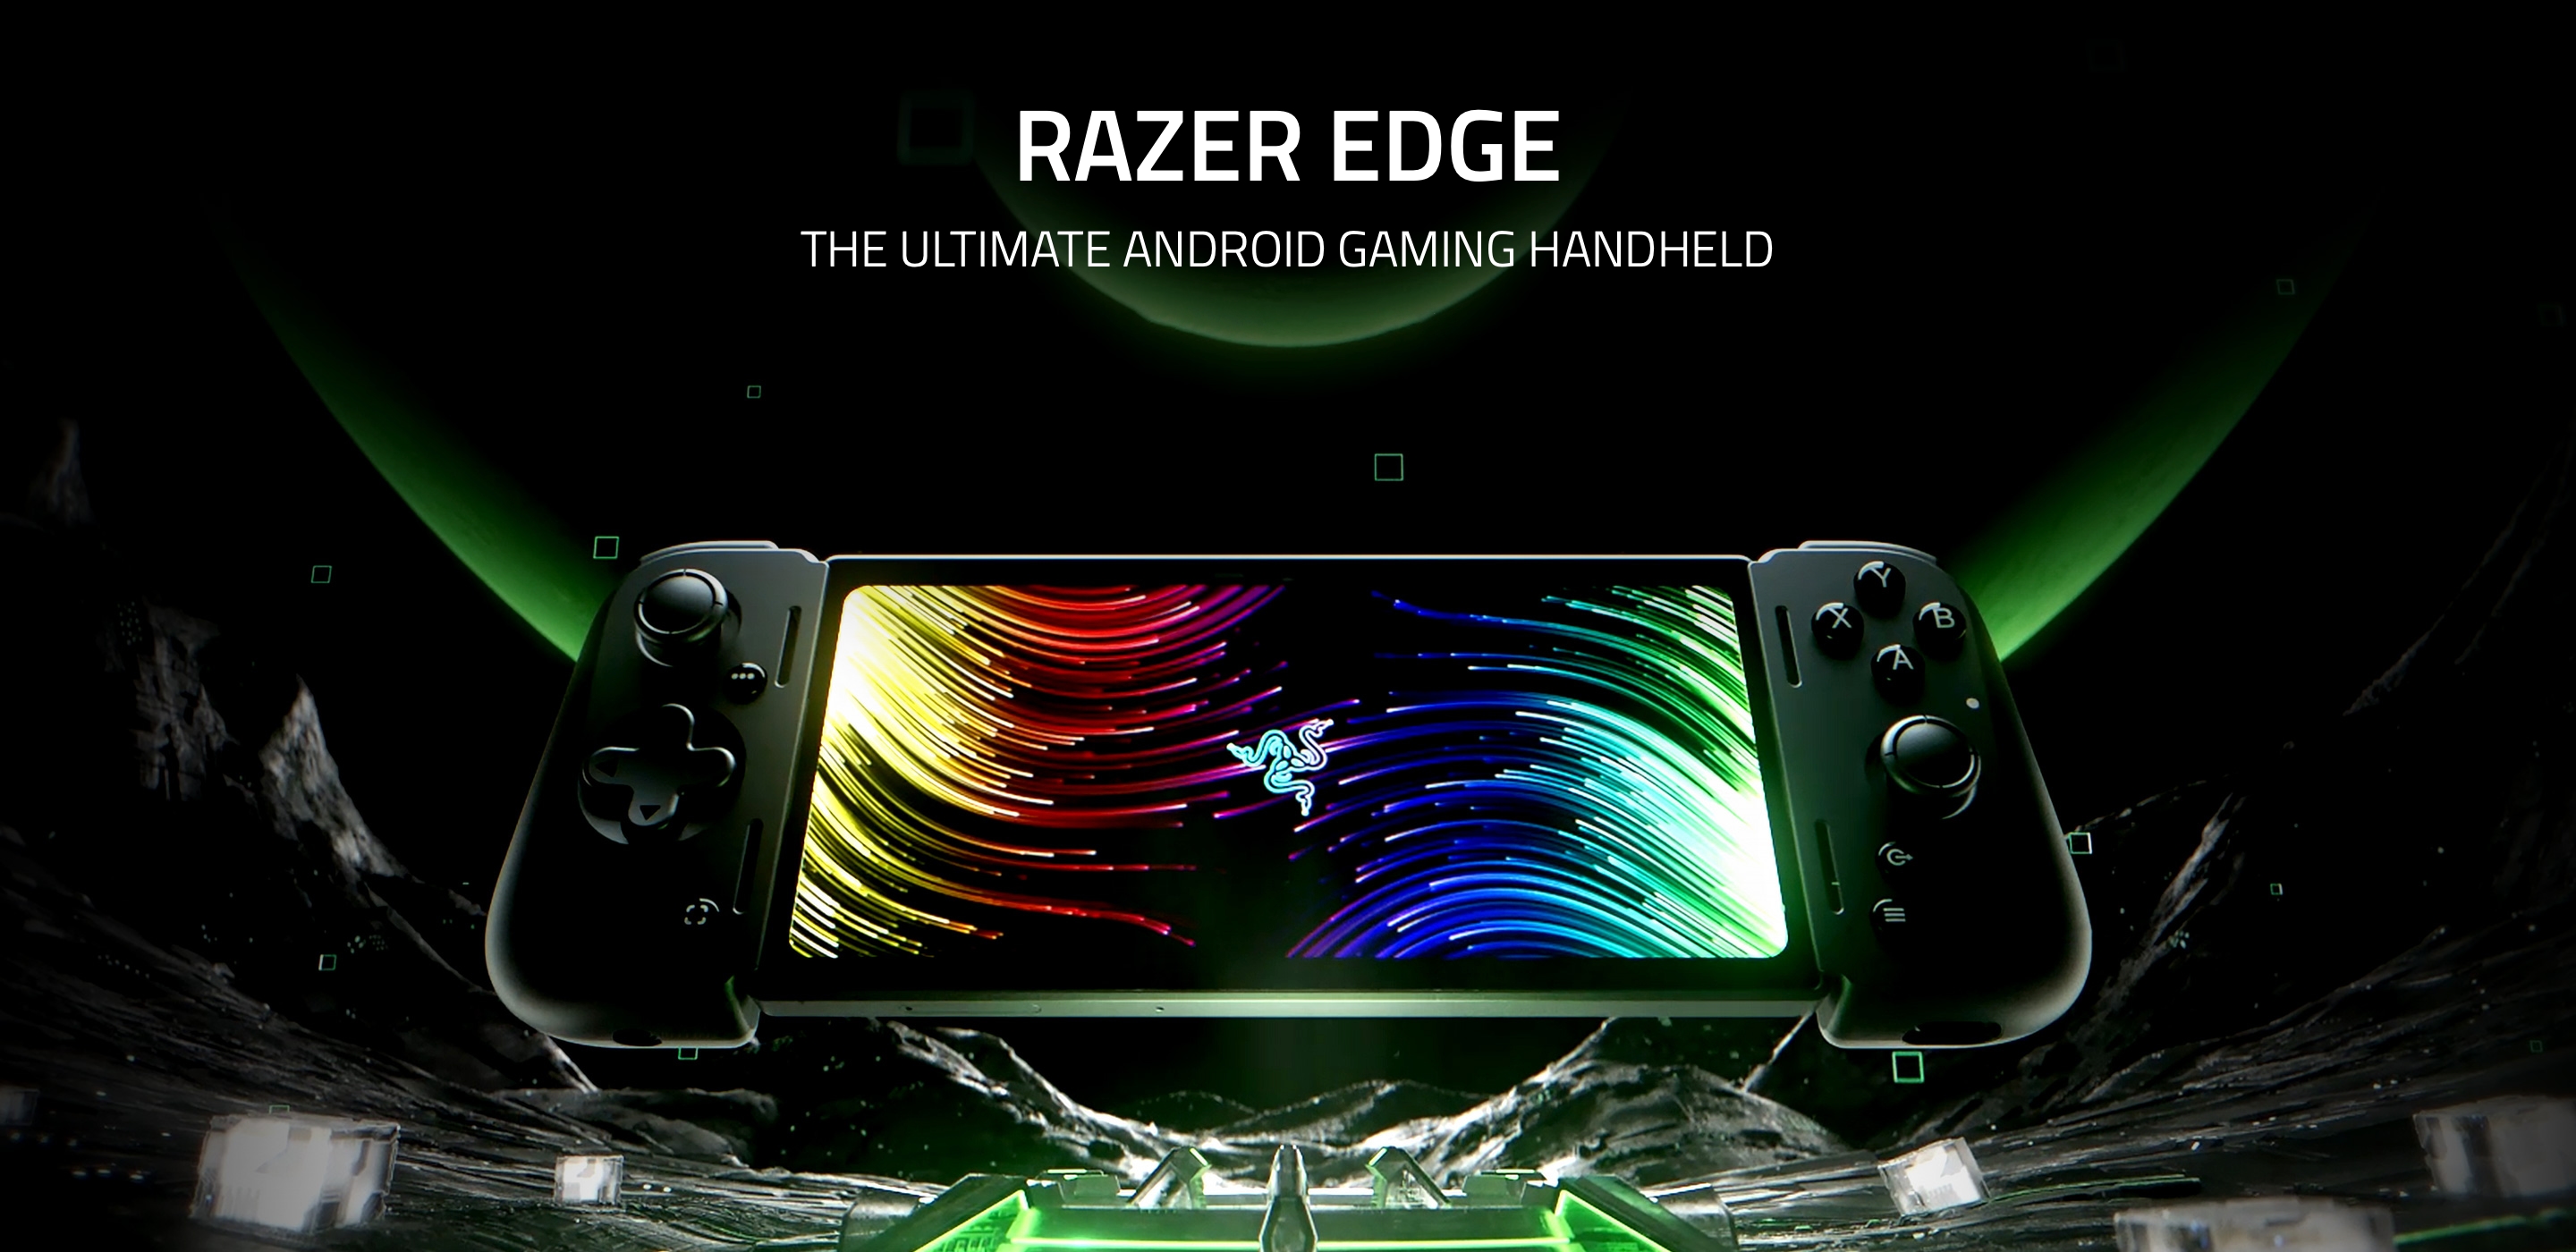 Razer Edge viene lanciato negli Stati Uniti: Console Android per il cloud gaming con schermo AMOLED a 144 Hz e chip Snapdragon G3X Gen 1